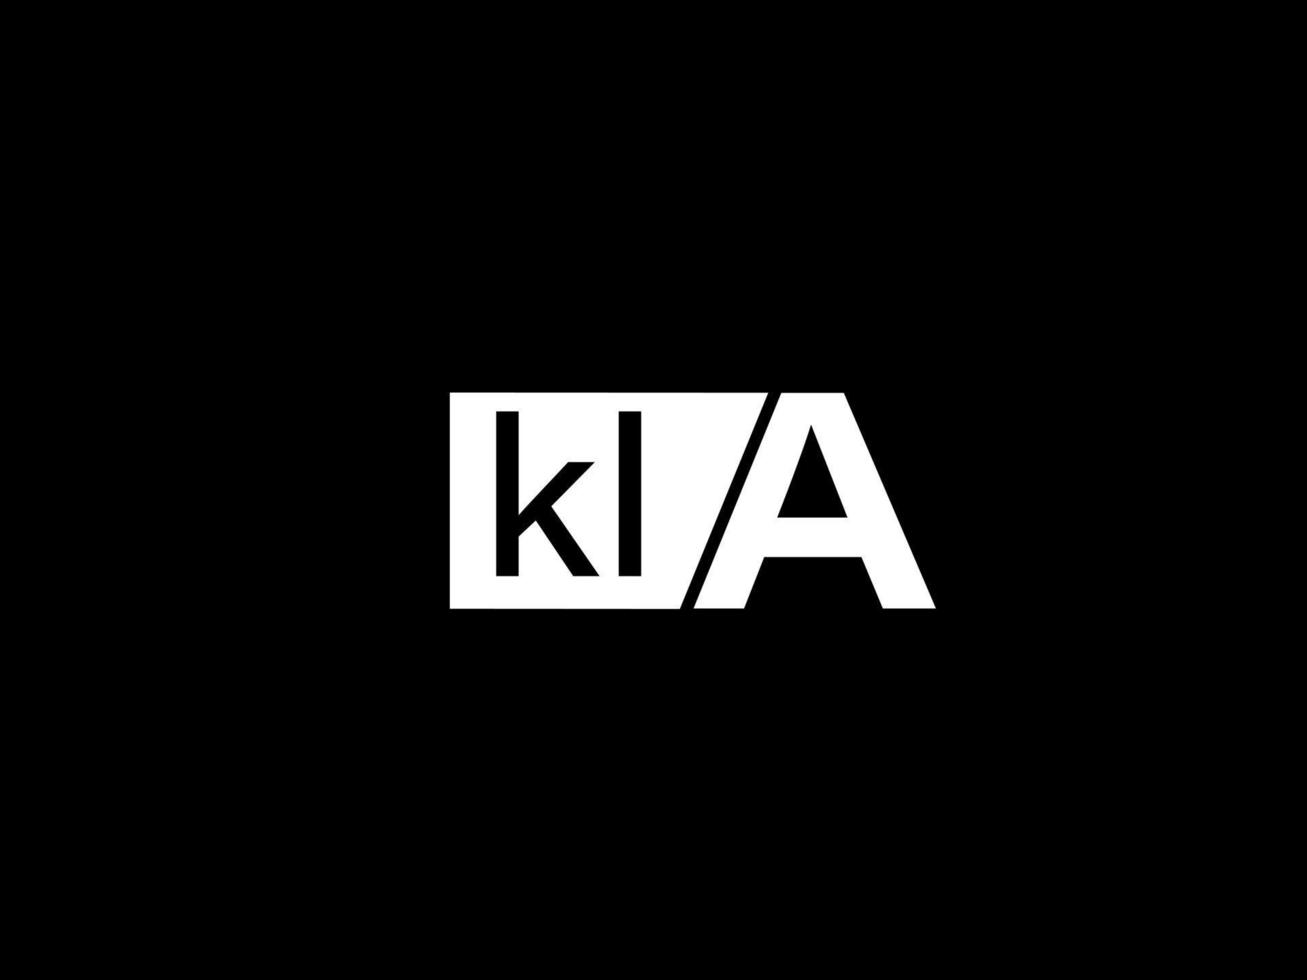 kla logotipo y diseño gráfico arte vectorial, iconos aislados en fondo negro vector